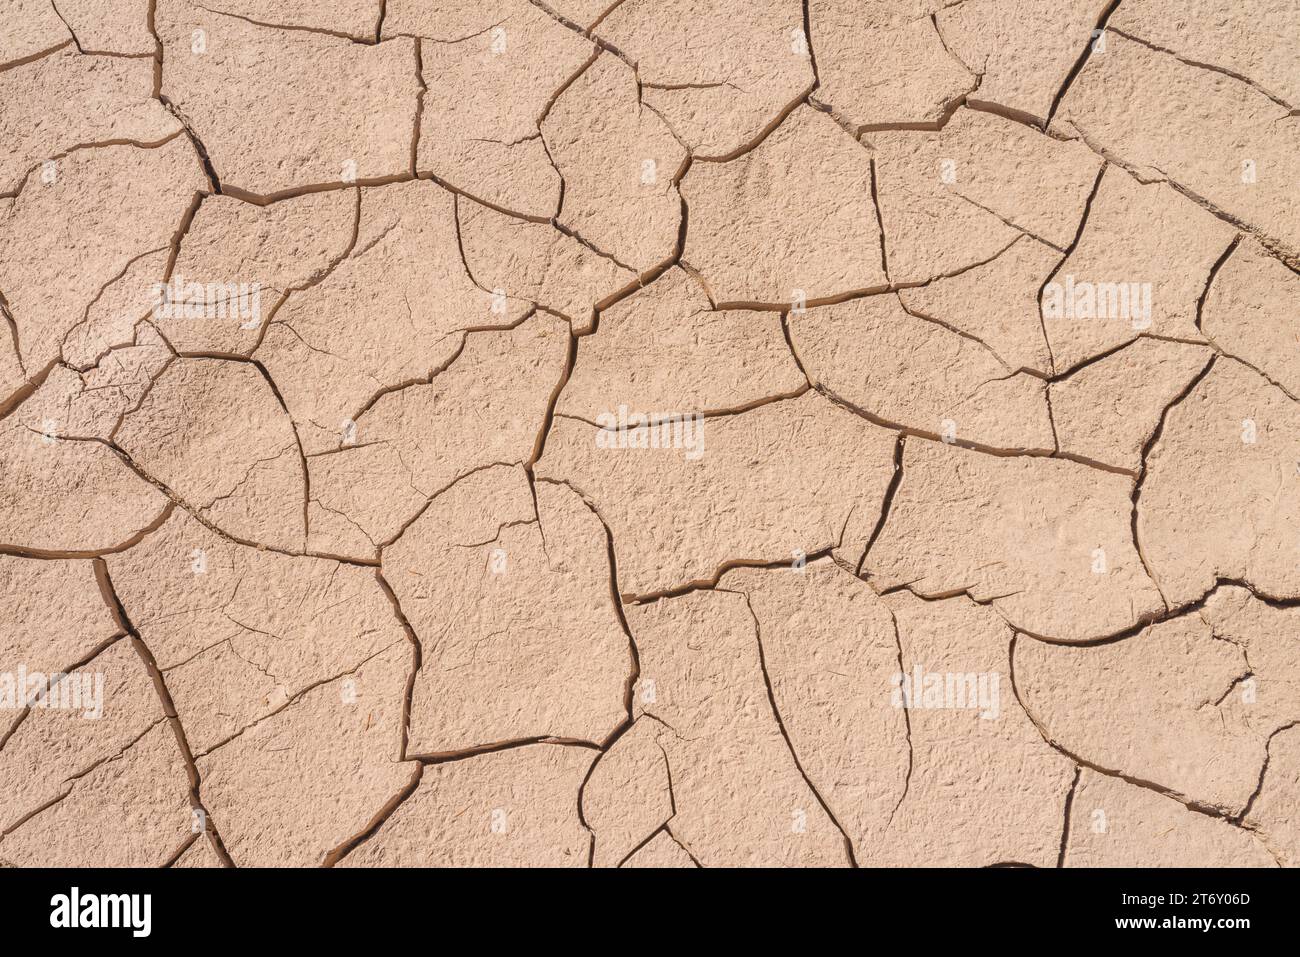 Grave siccità che produce terreno asciutto e arenato, con fango secco incrinato e forme artistiche nella terra sabbiosa. Cambiamento climatico in montagna. Foto Stock